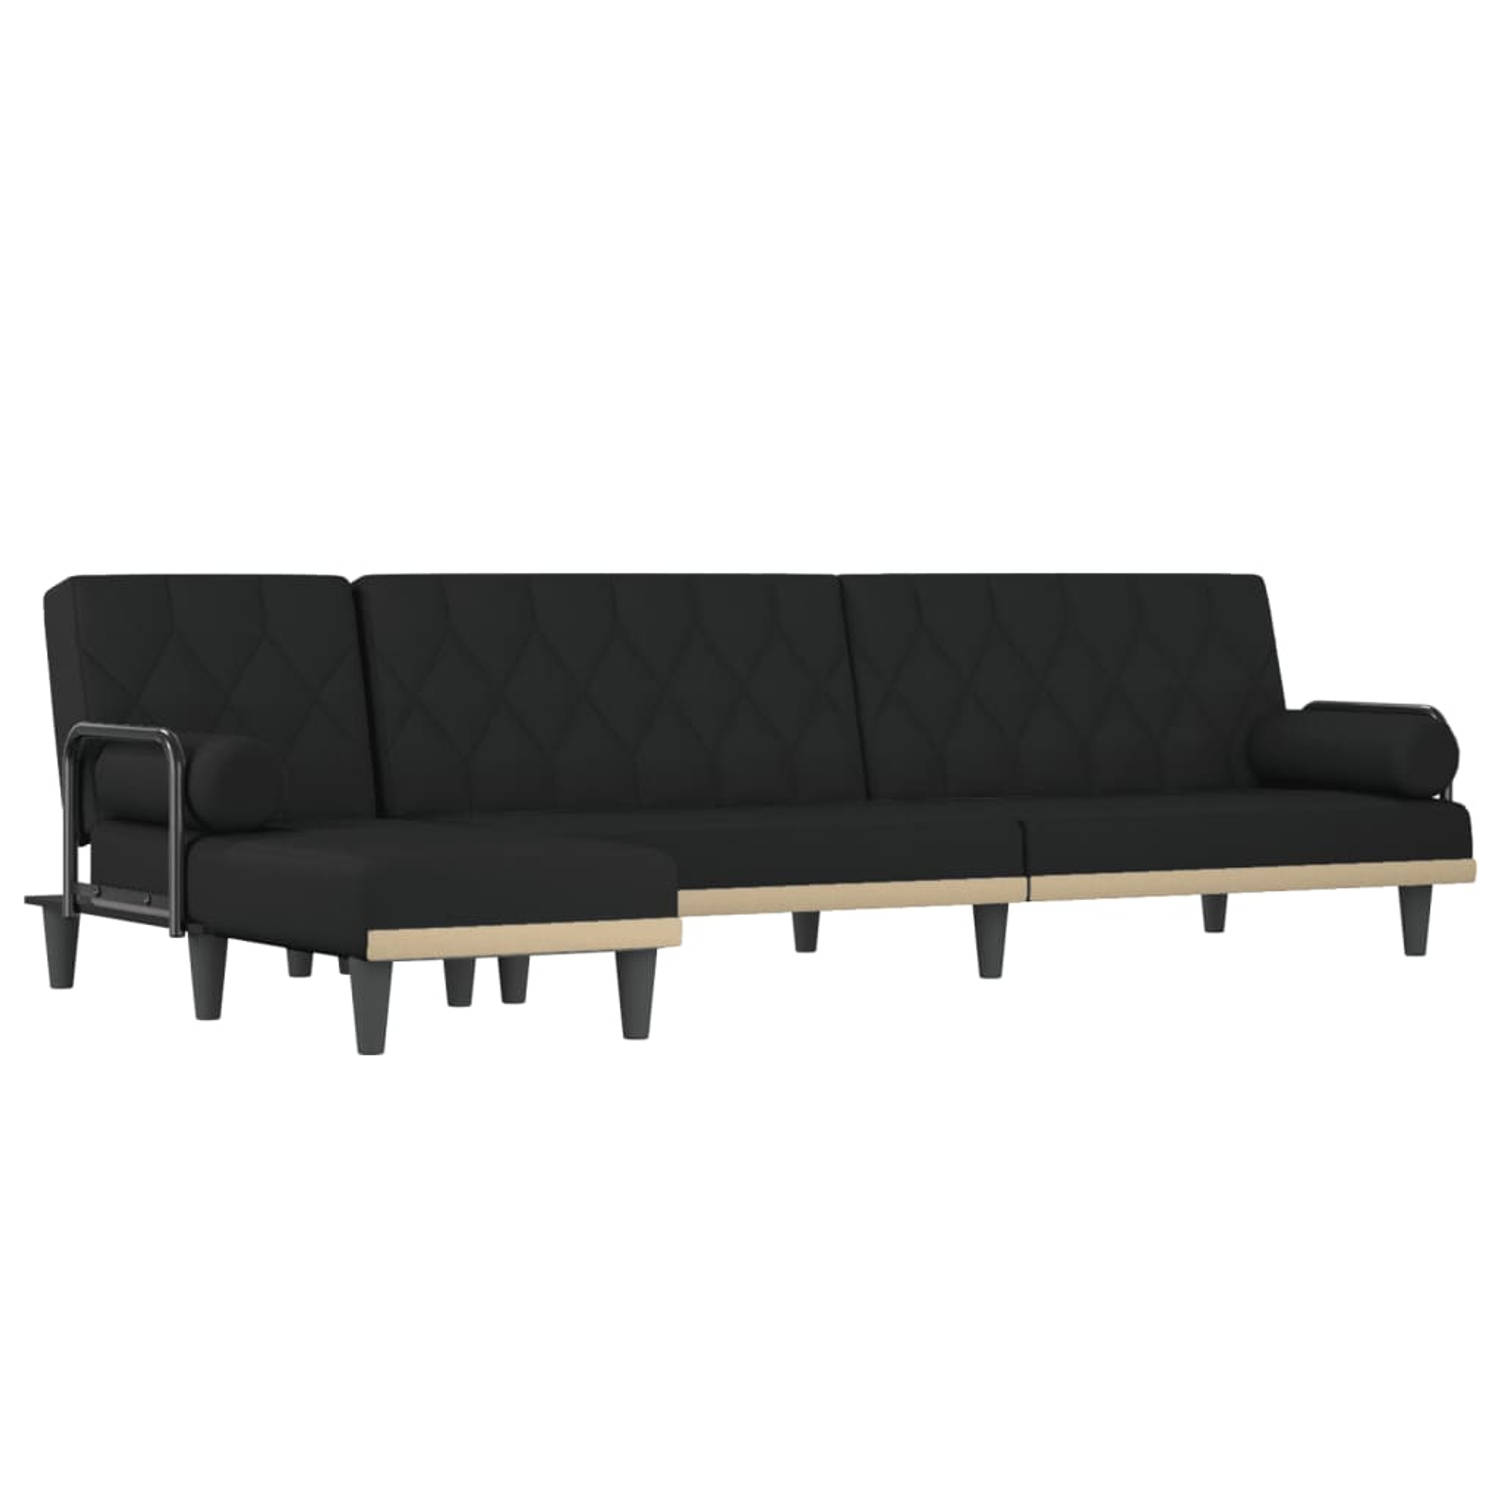 The Living Store Slaapbank L-vormig zwart - 260x140 cm - multifunctioneel en duurzaam - verstelbare posities - comfortabele zitervaring - inclusief chaise longue - montageset inbeg